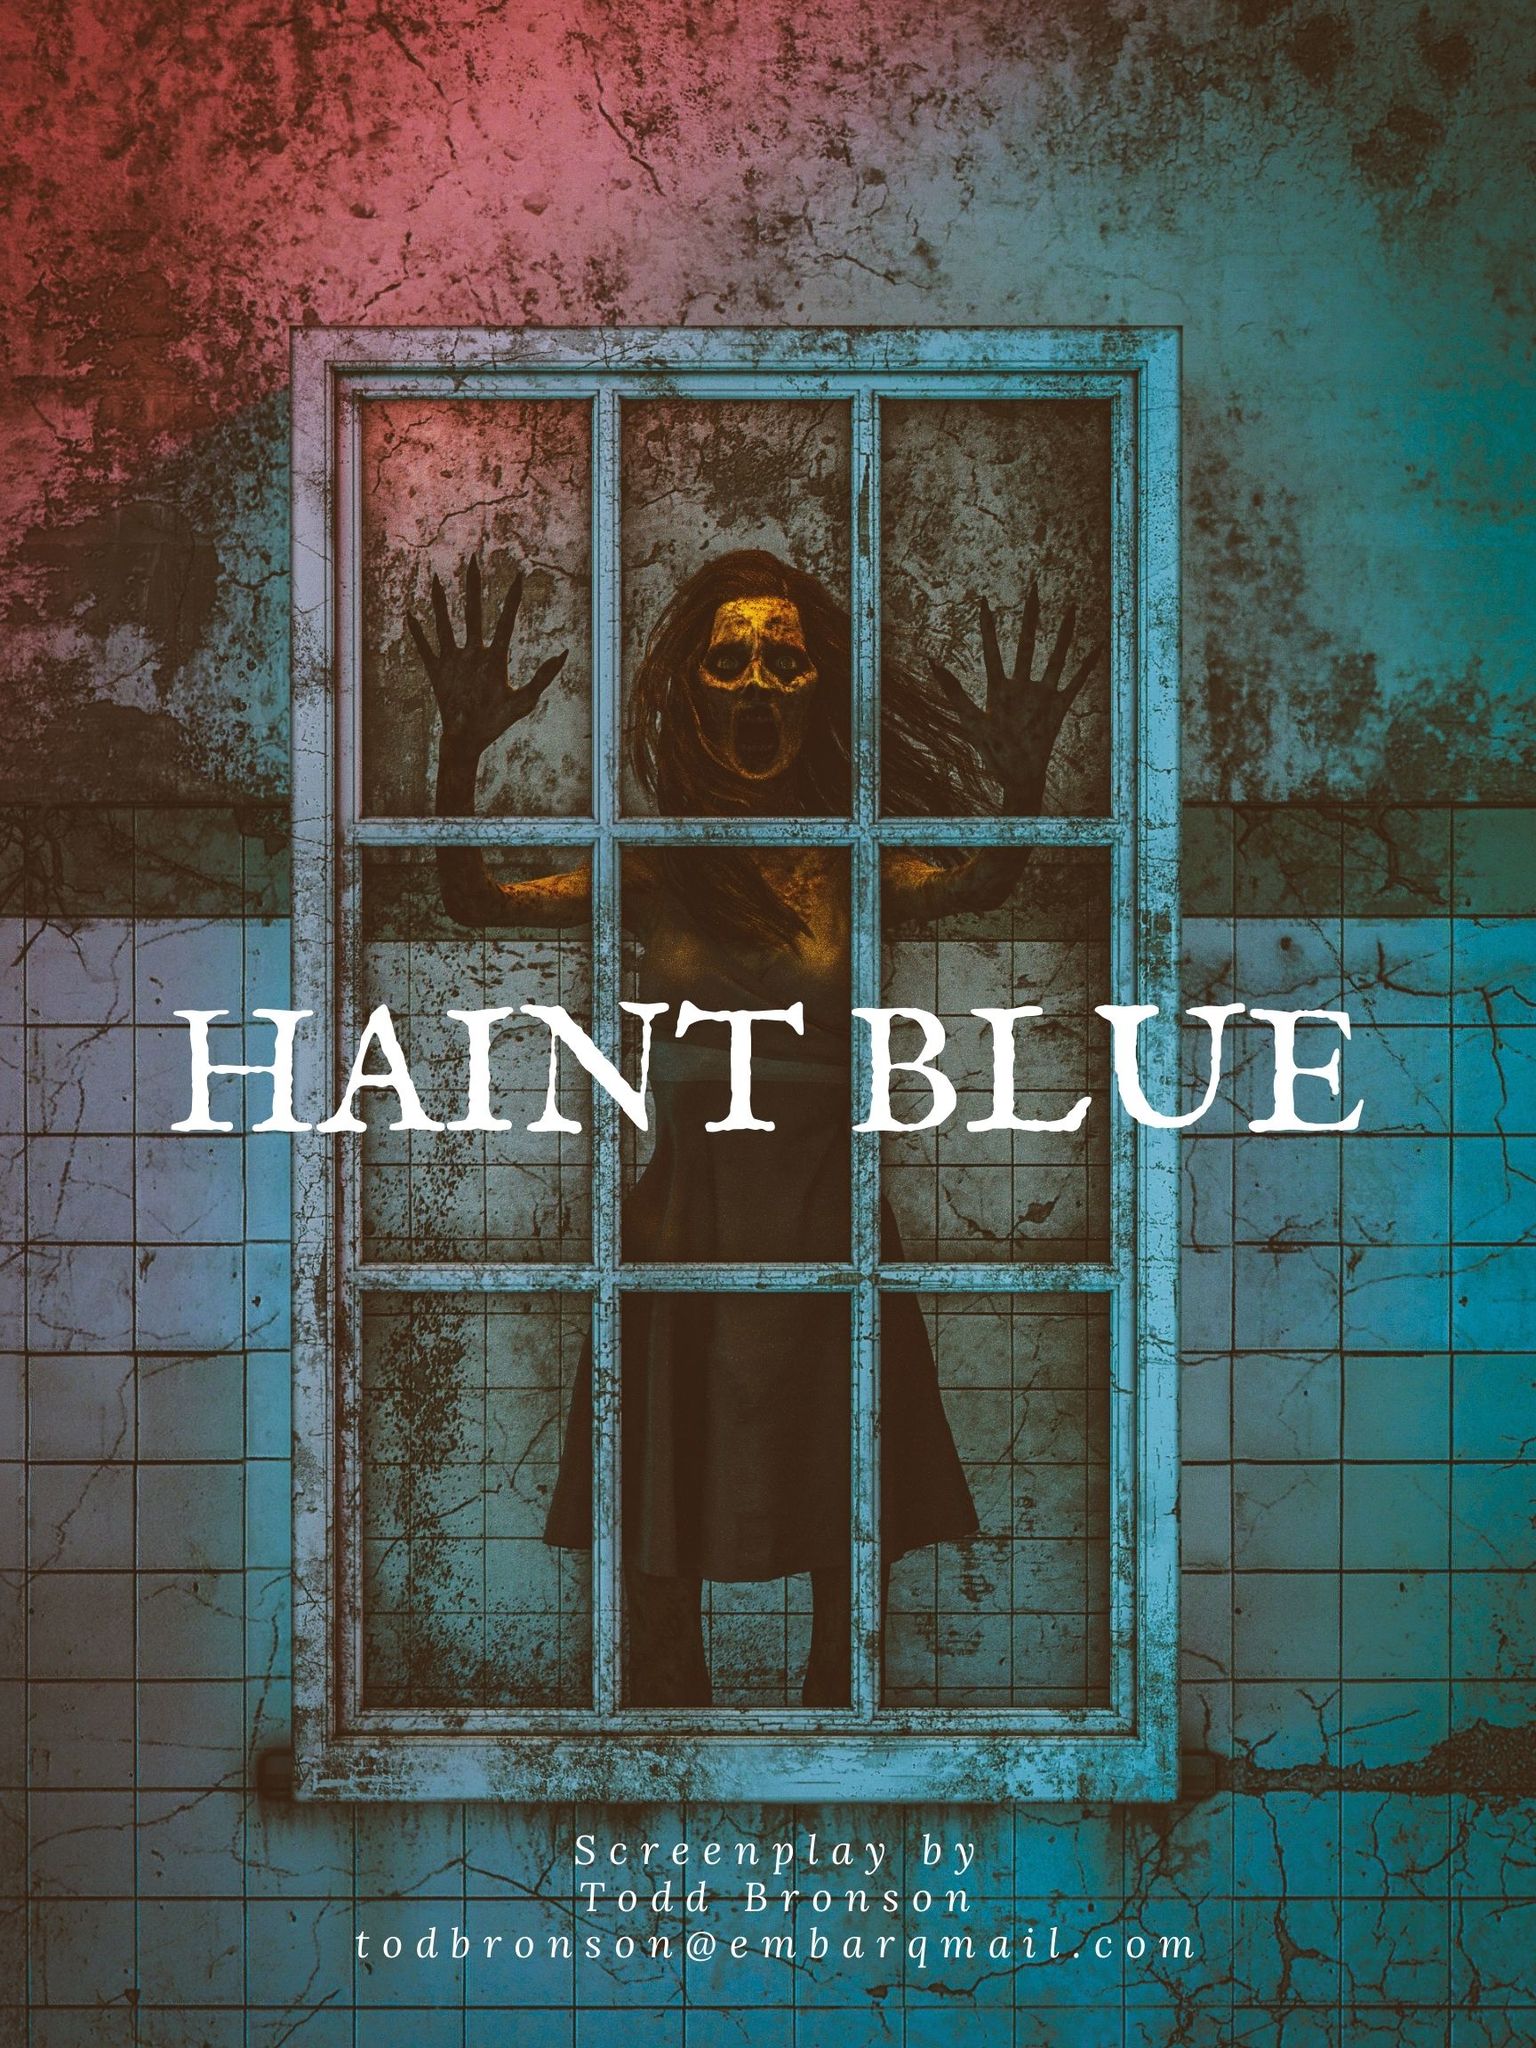 HAINT BLUE